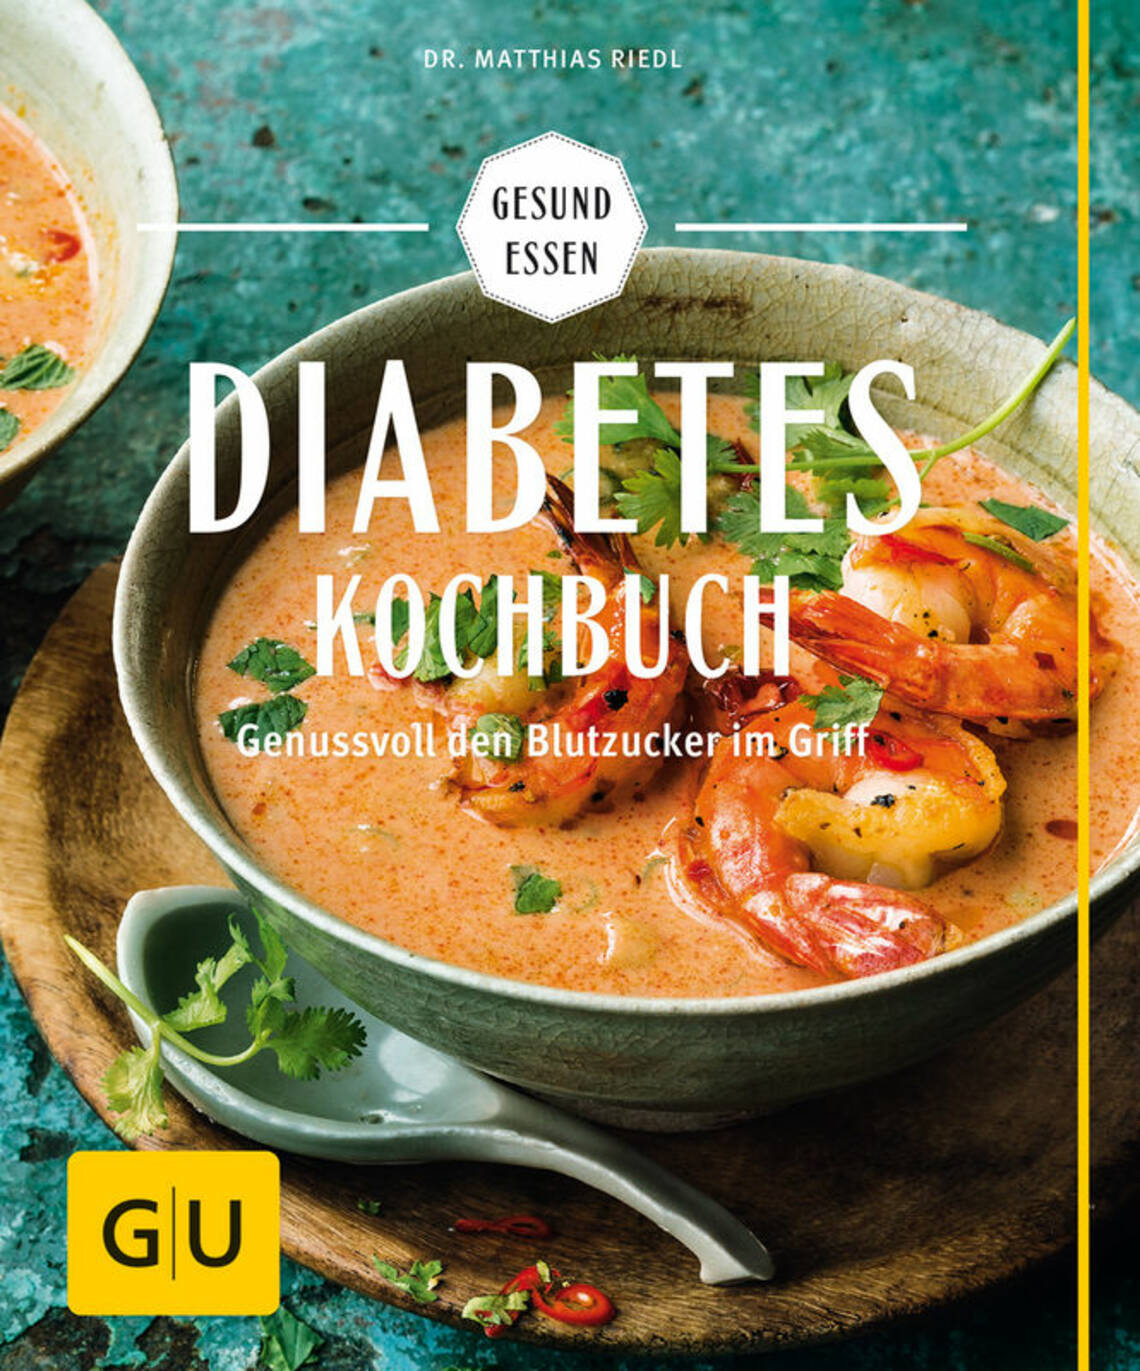 Diabetes-Kochbuch von Dr. Matthias Riedl